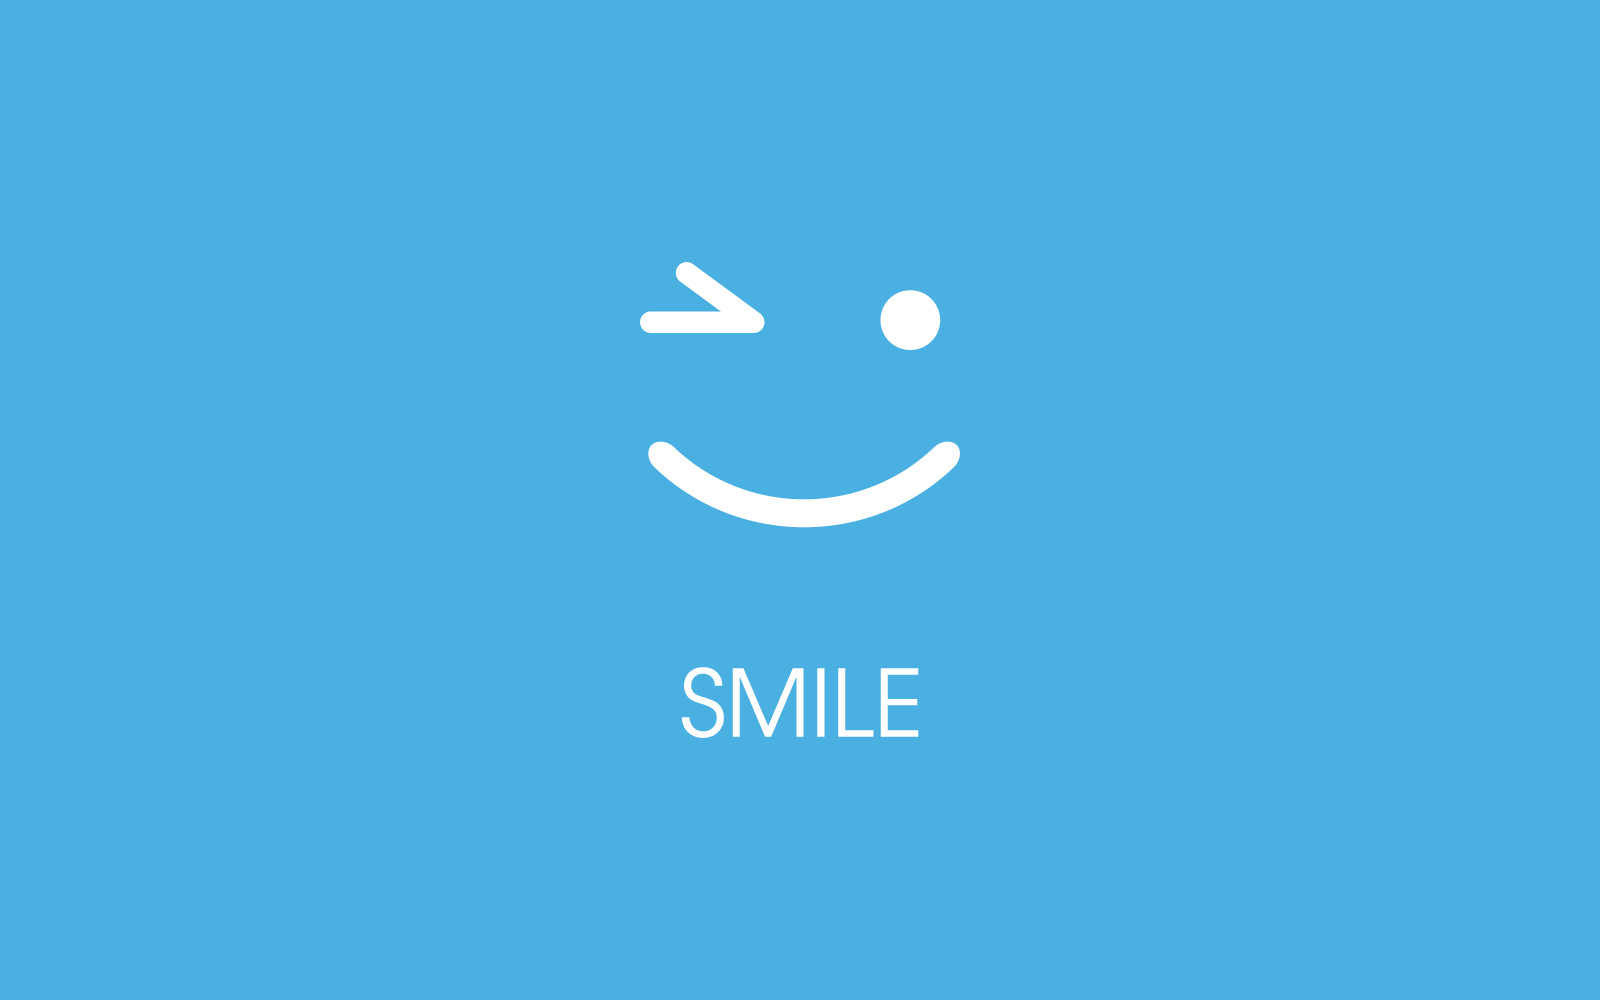 Smile happy face emoticon vector icon flat design